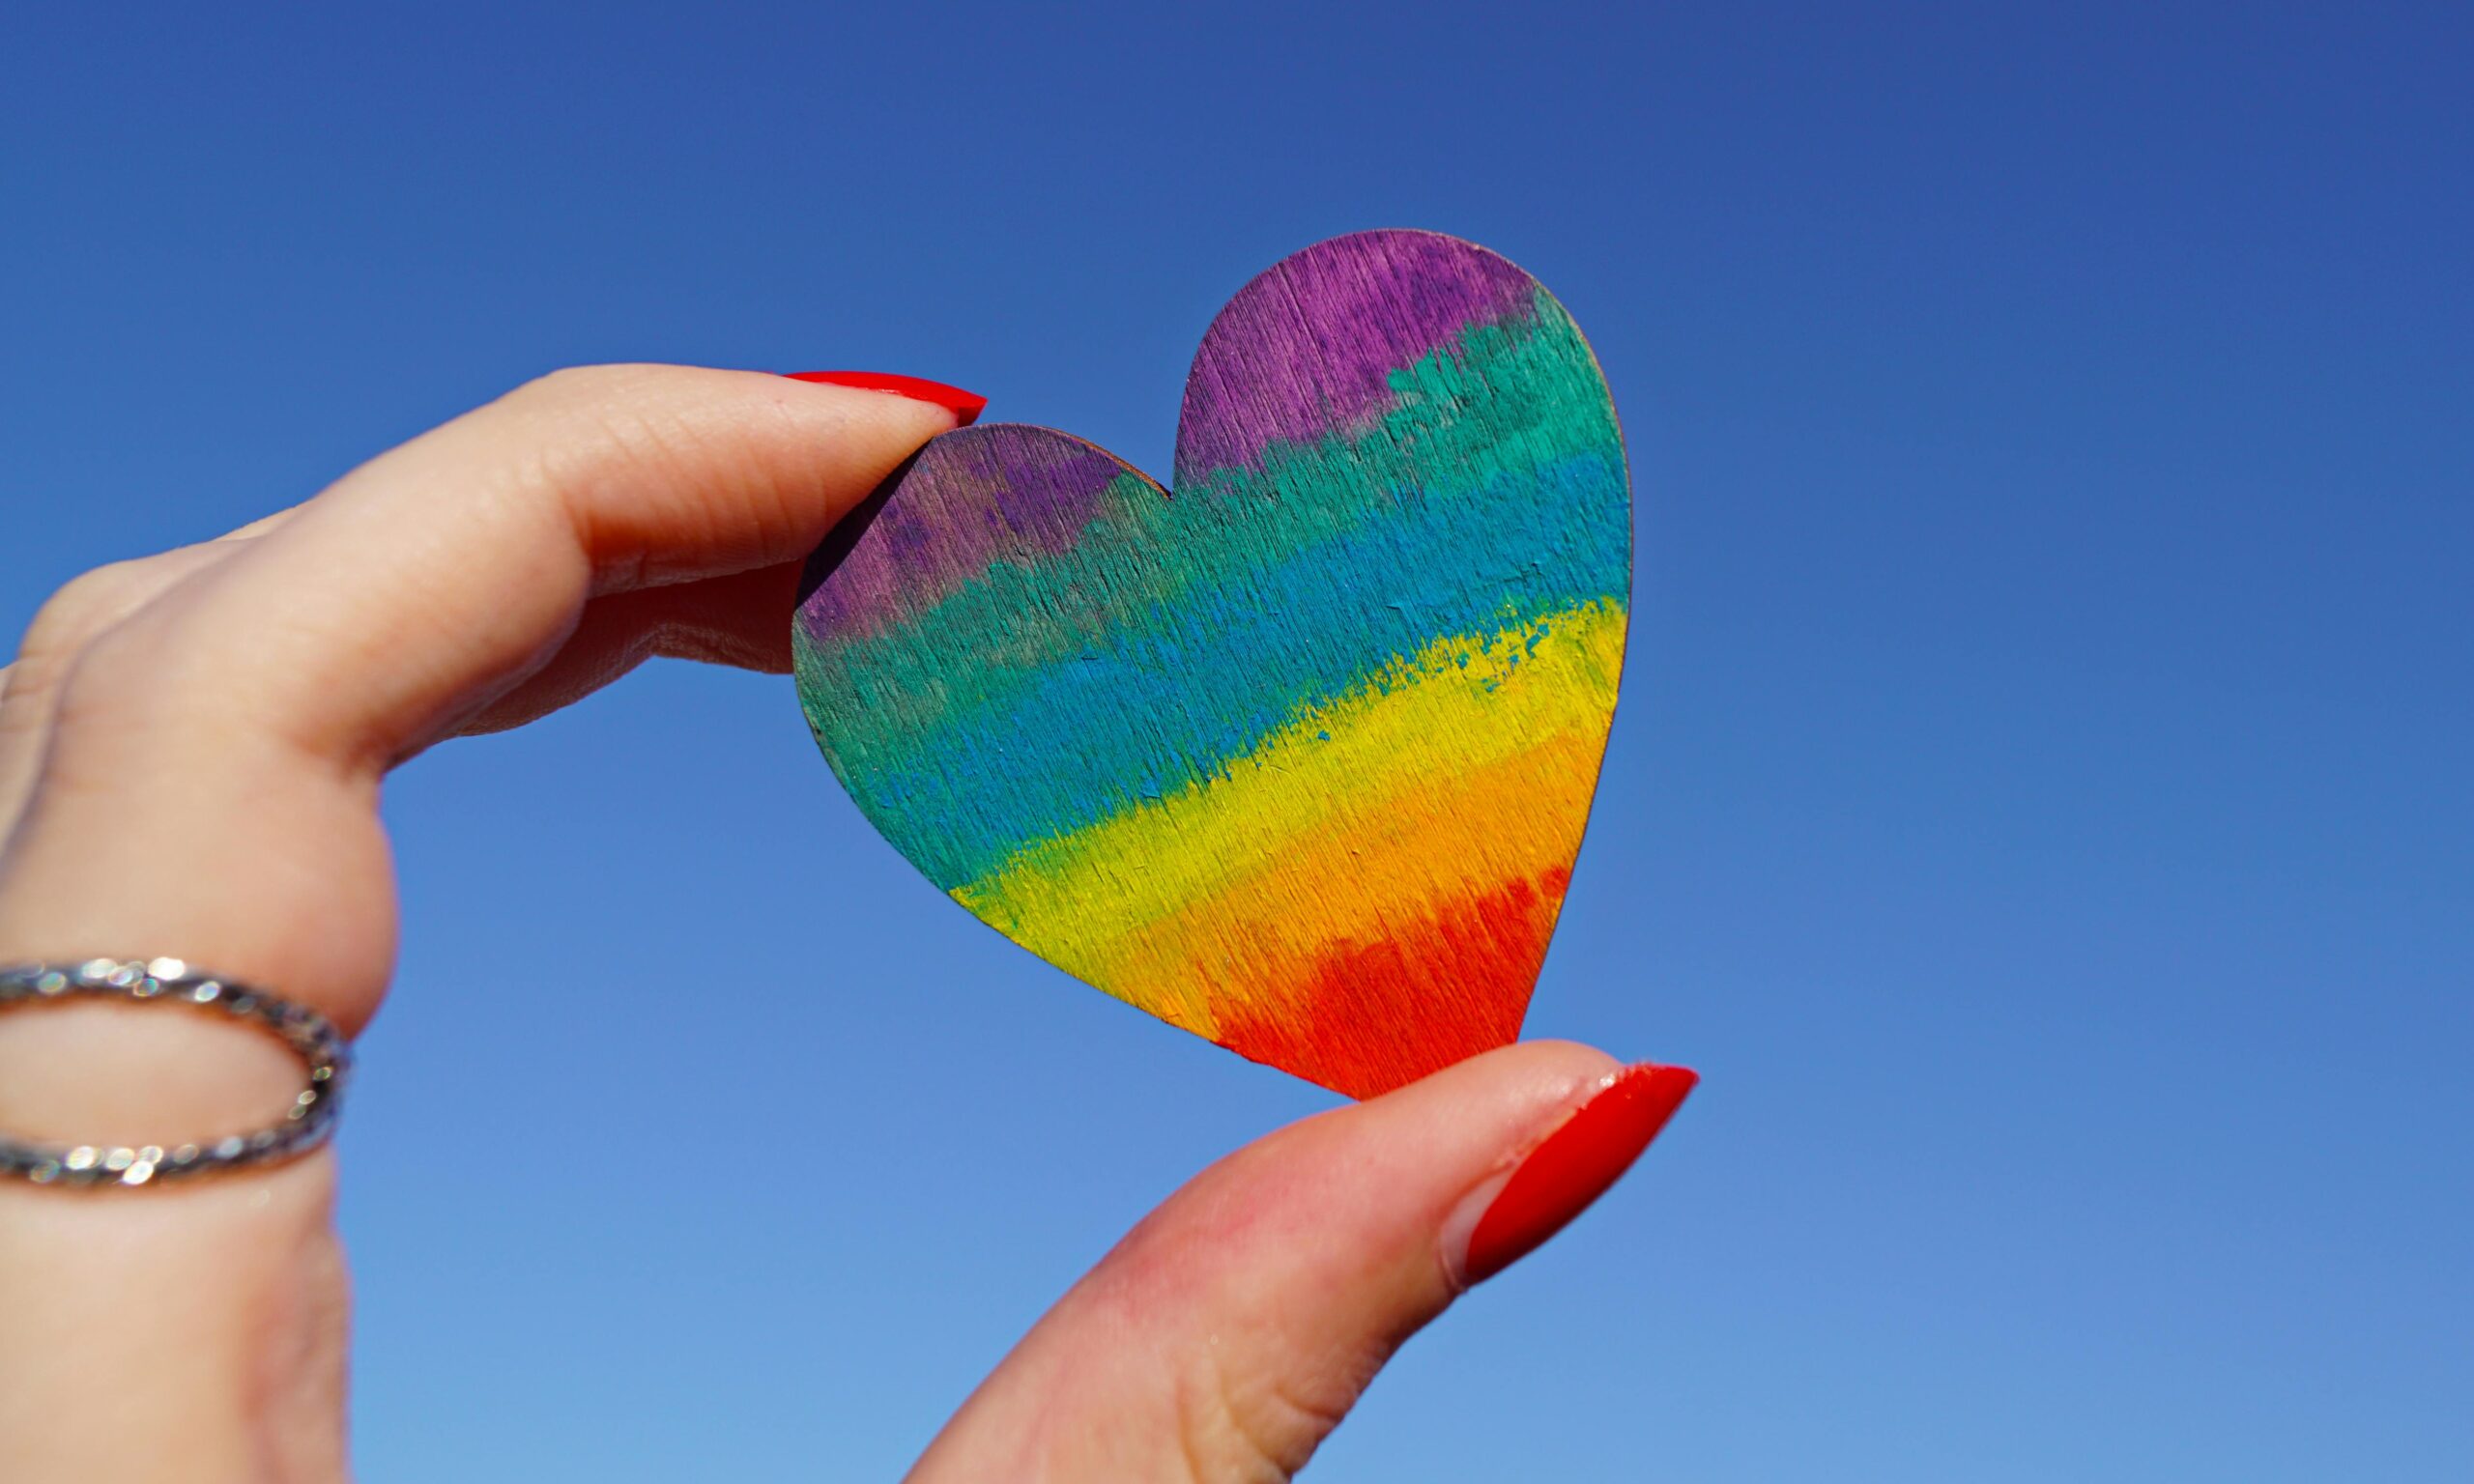 Medzinárodný deň boja proti homofóbii, bifóbii a transfóbii